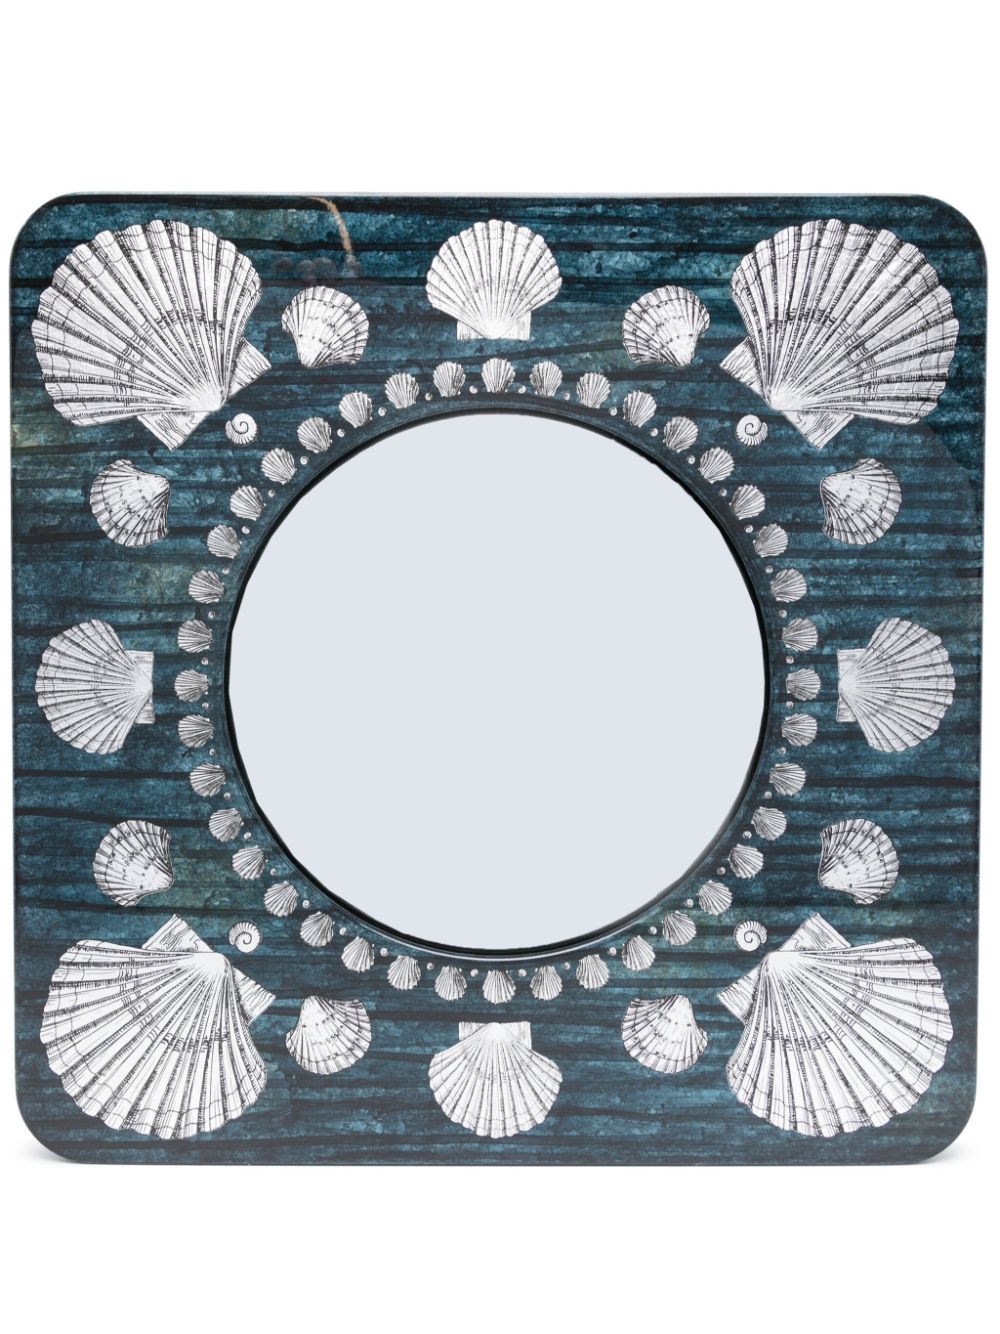 Fornasetti convex mirror frame - Silver von Fornasetti